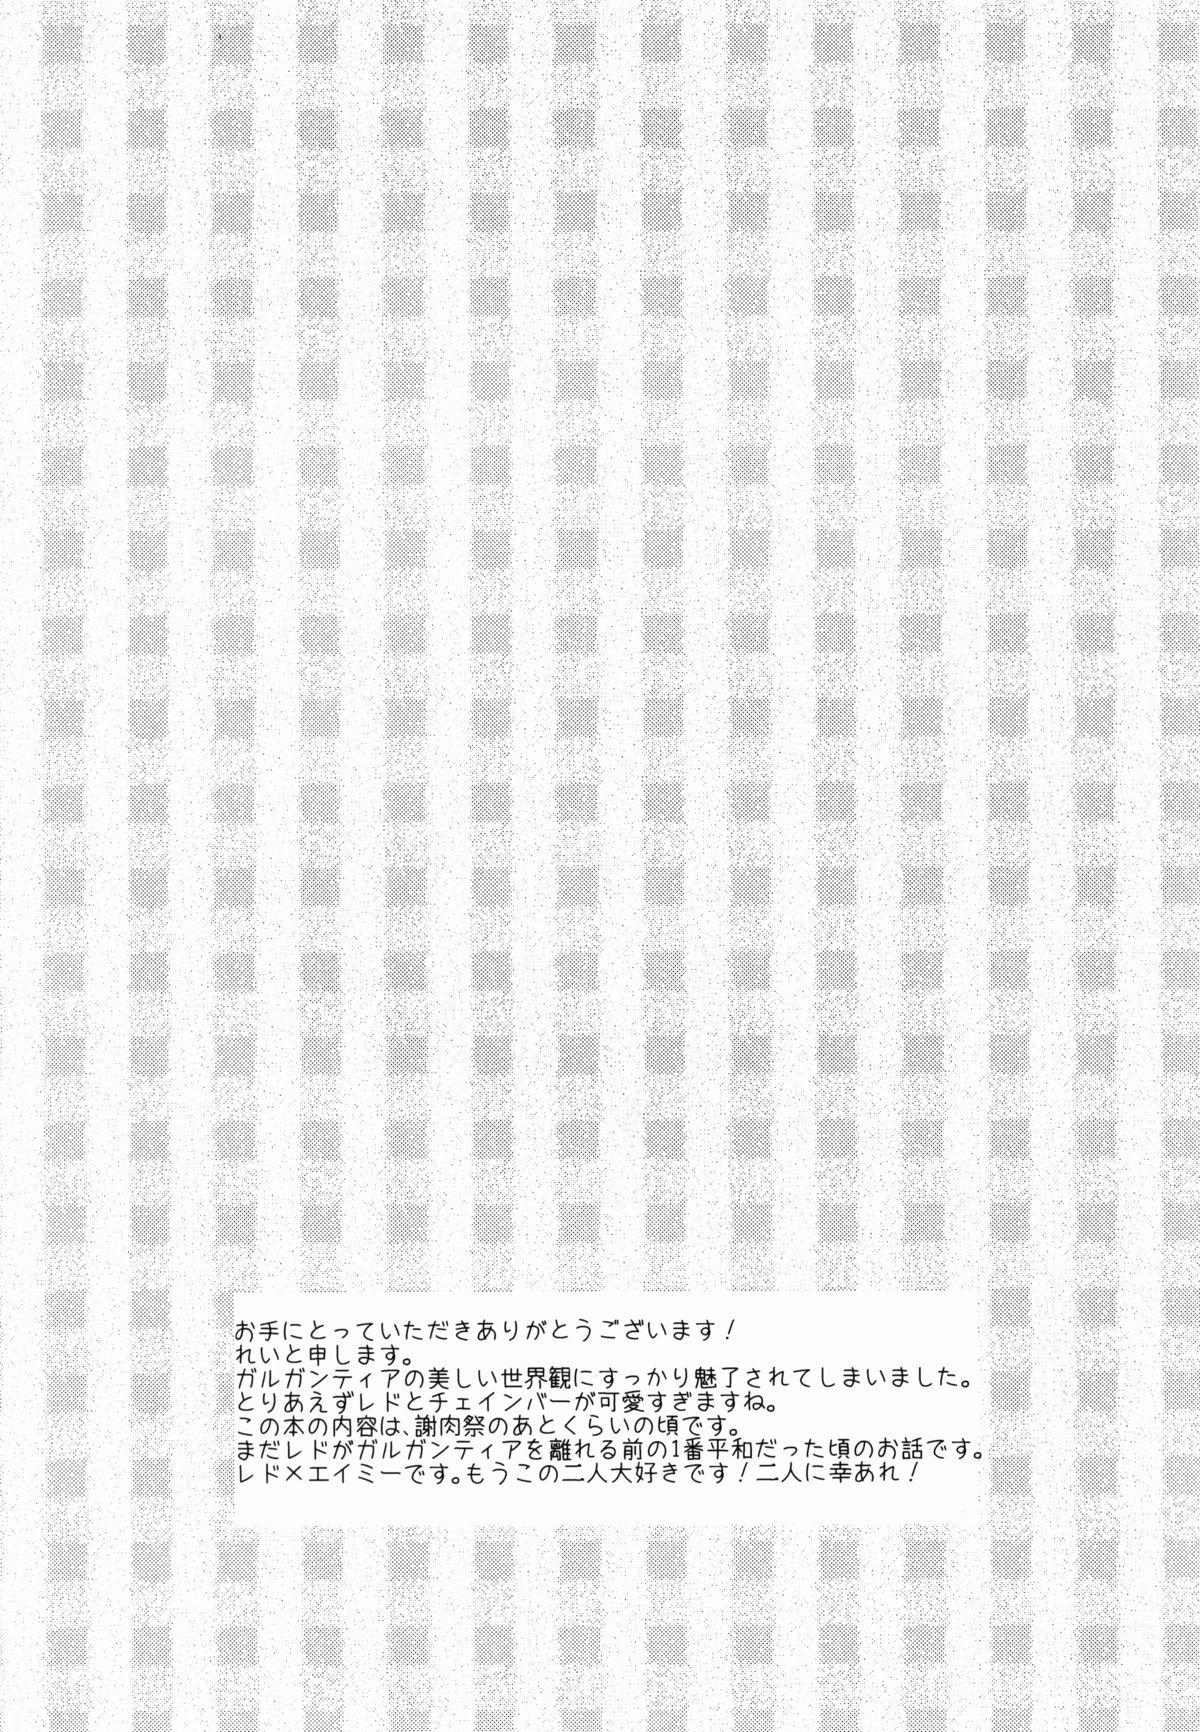 Cdmx Namiiro Gargantia - Suisei no gargantia Alternative - Page 4